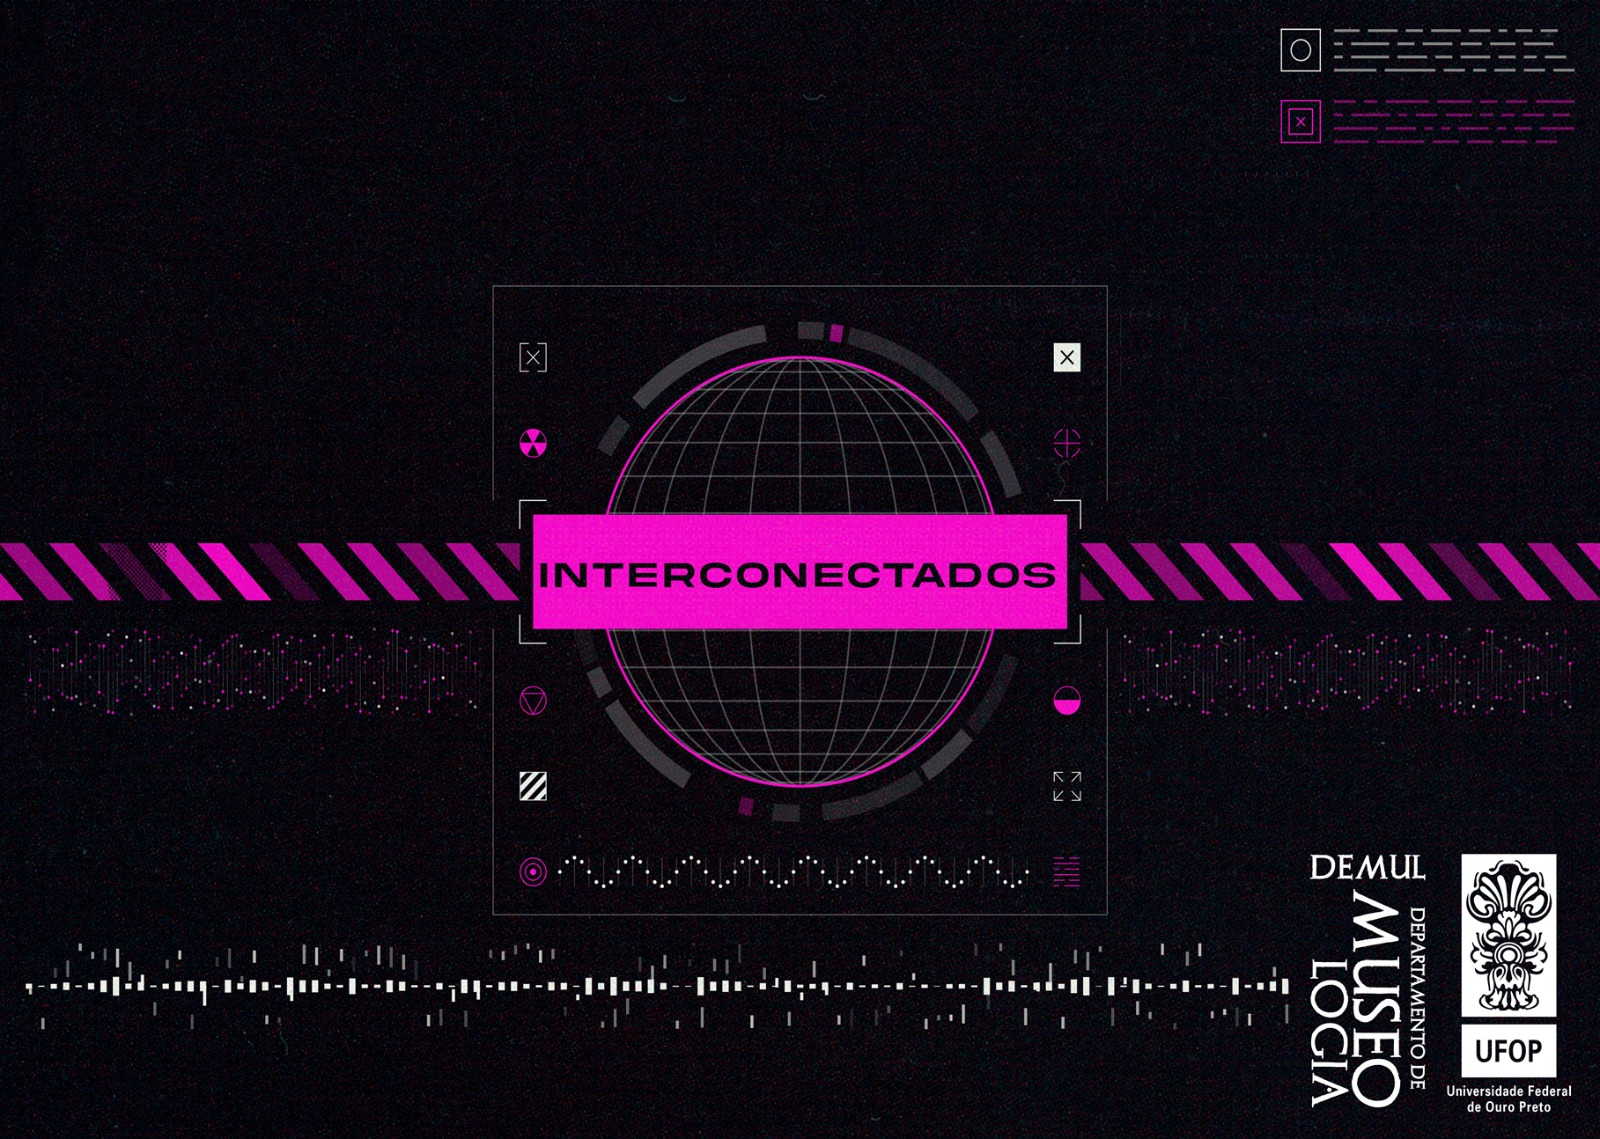 interconectados_1